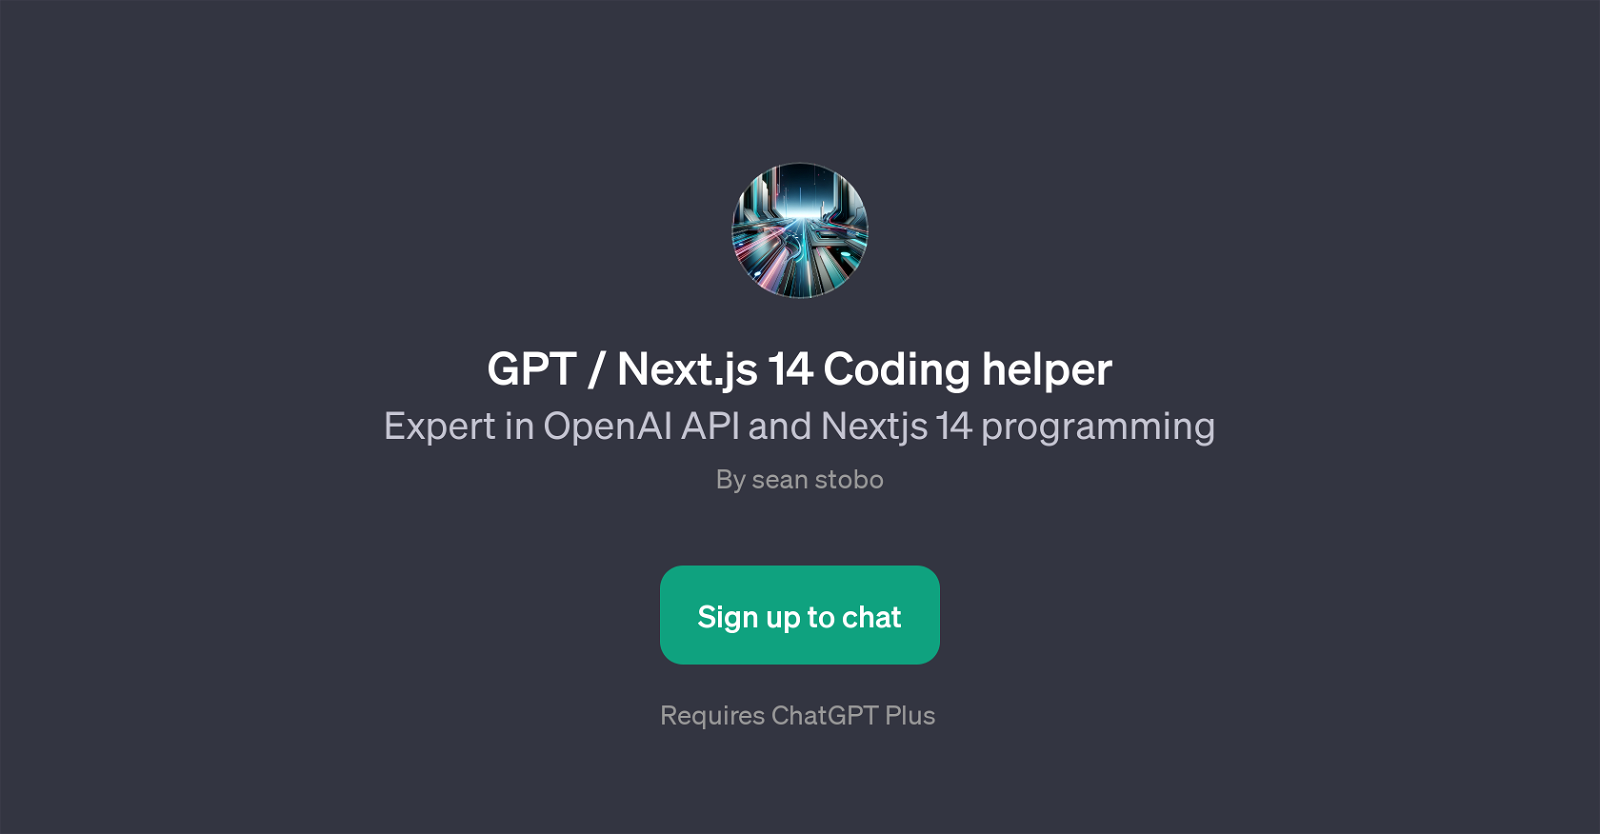 GPT / Next.js 14 Coding helper website